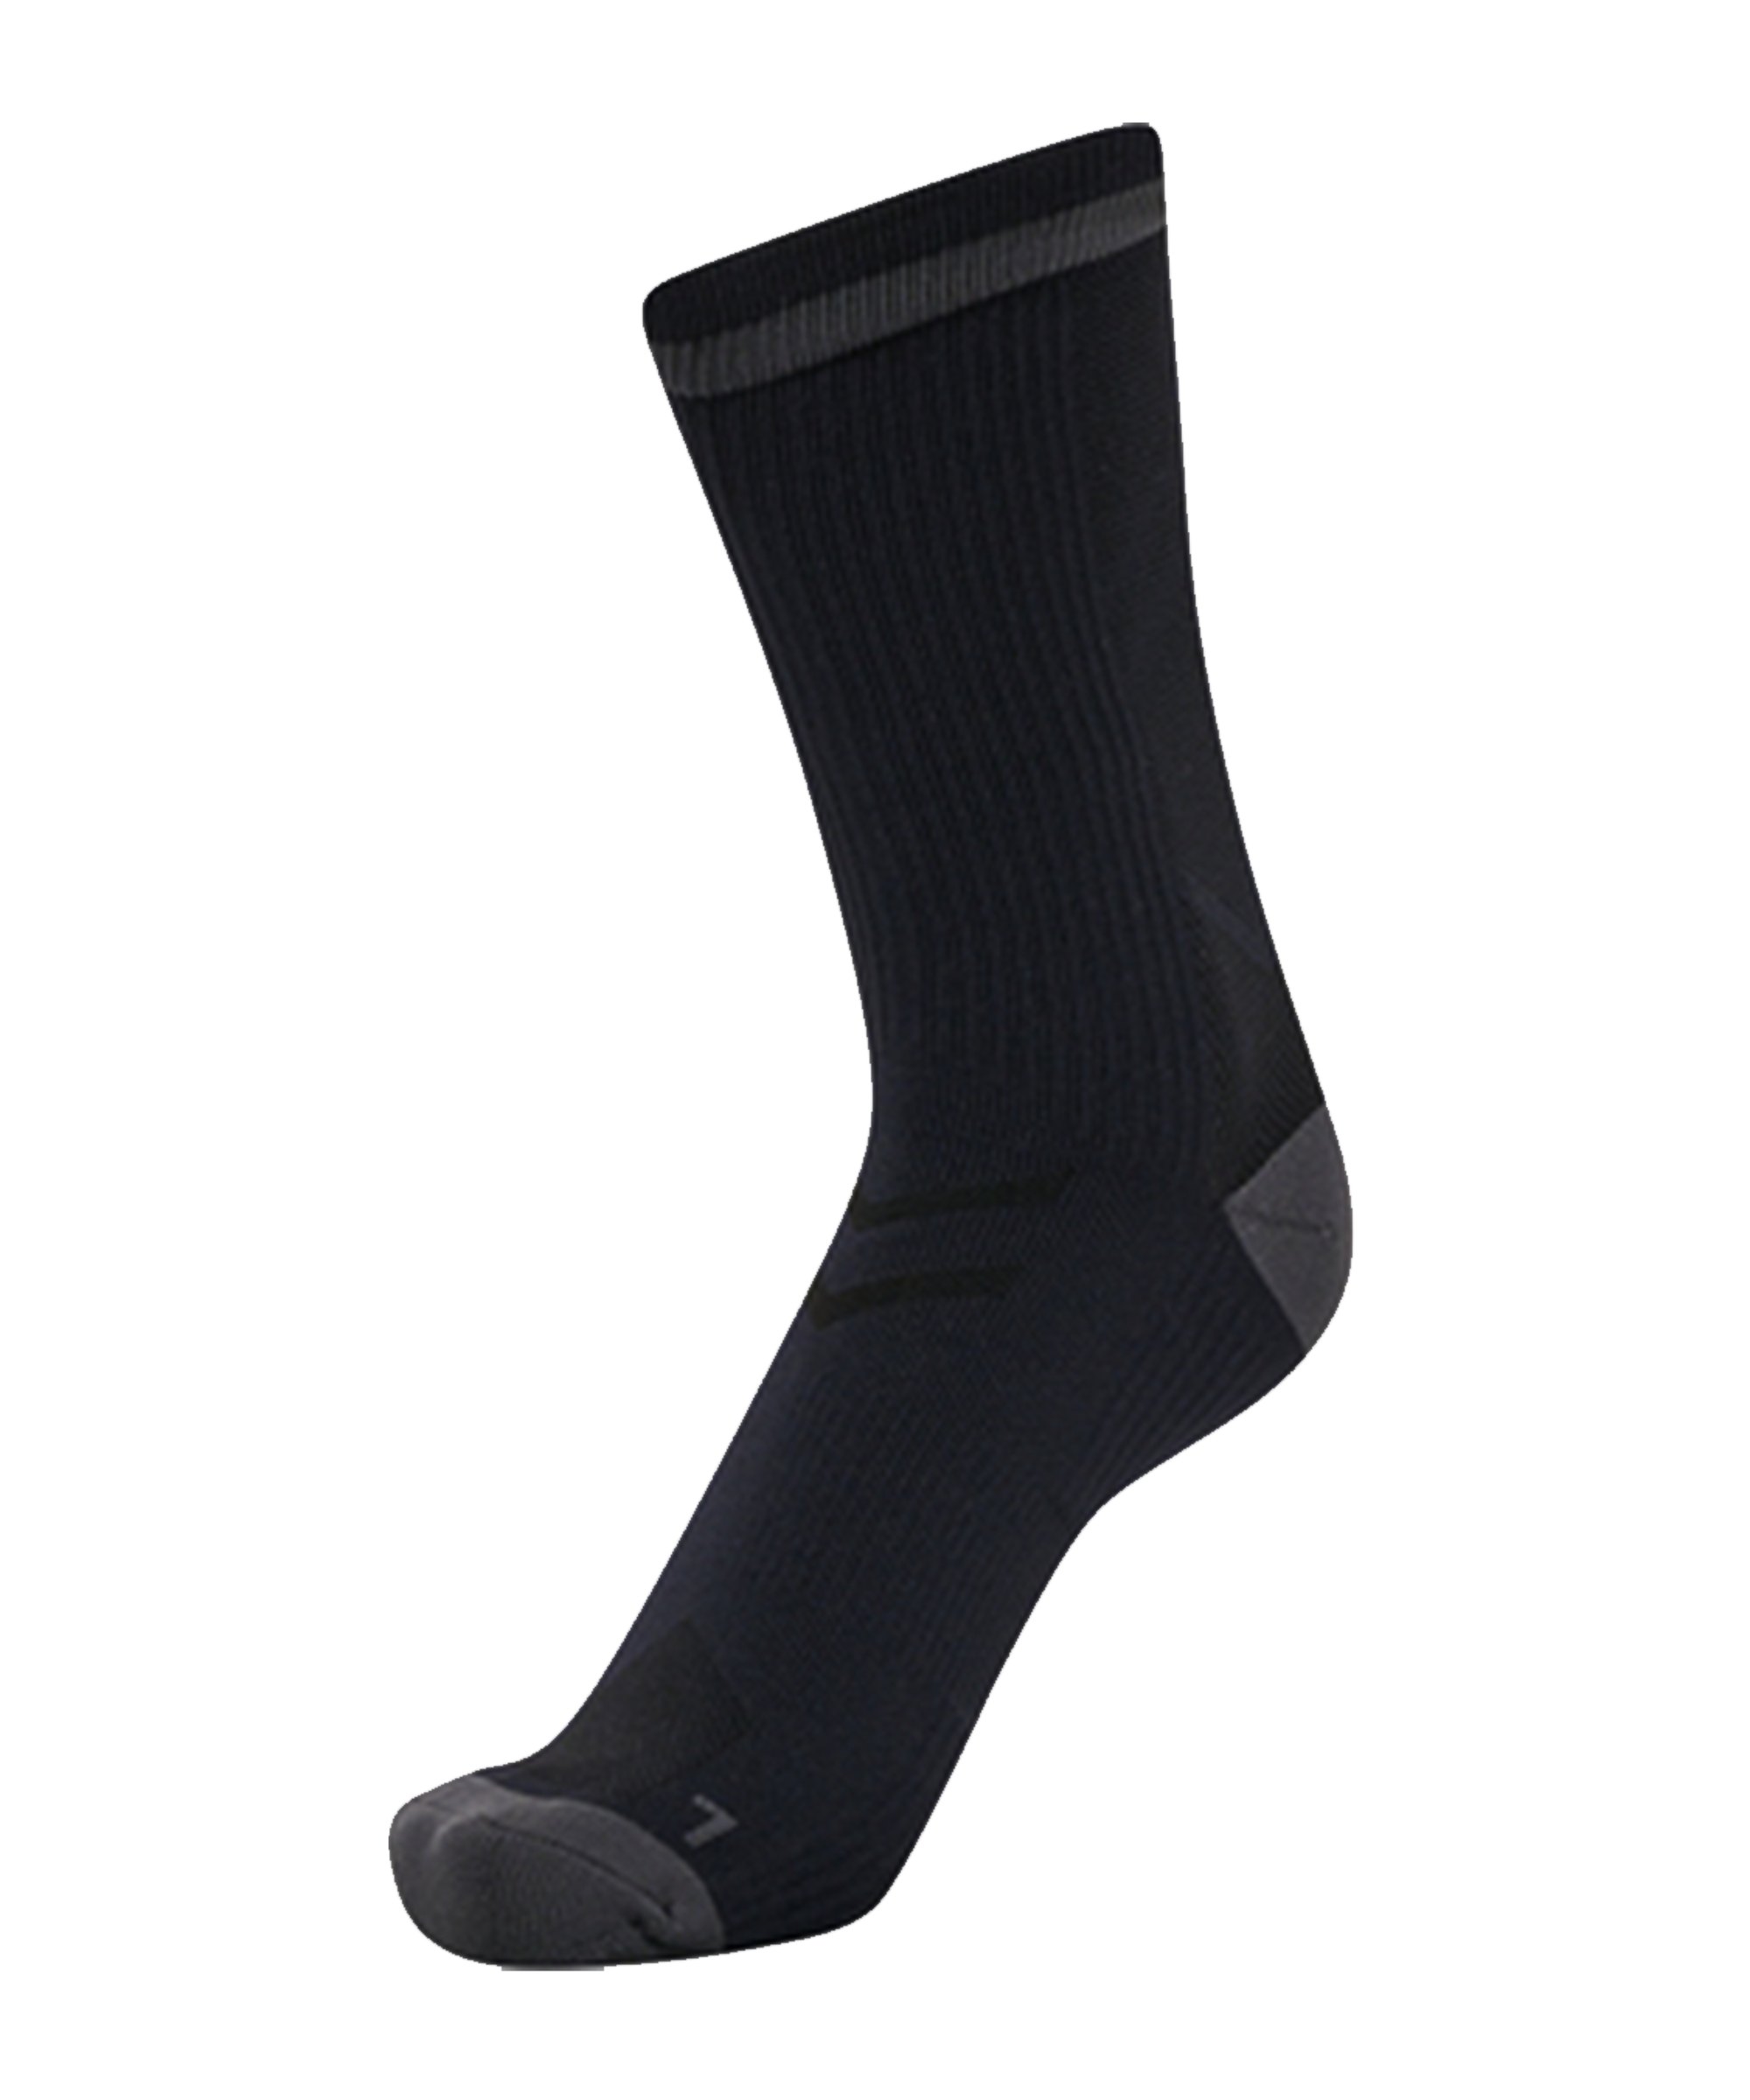 Hummel ELITE INDOOR Socken Schwarz F2715 - schwarz